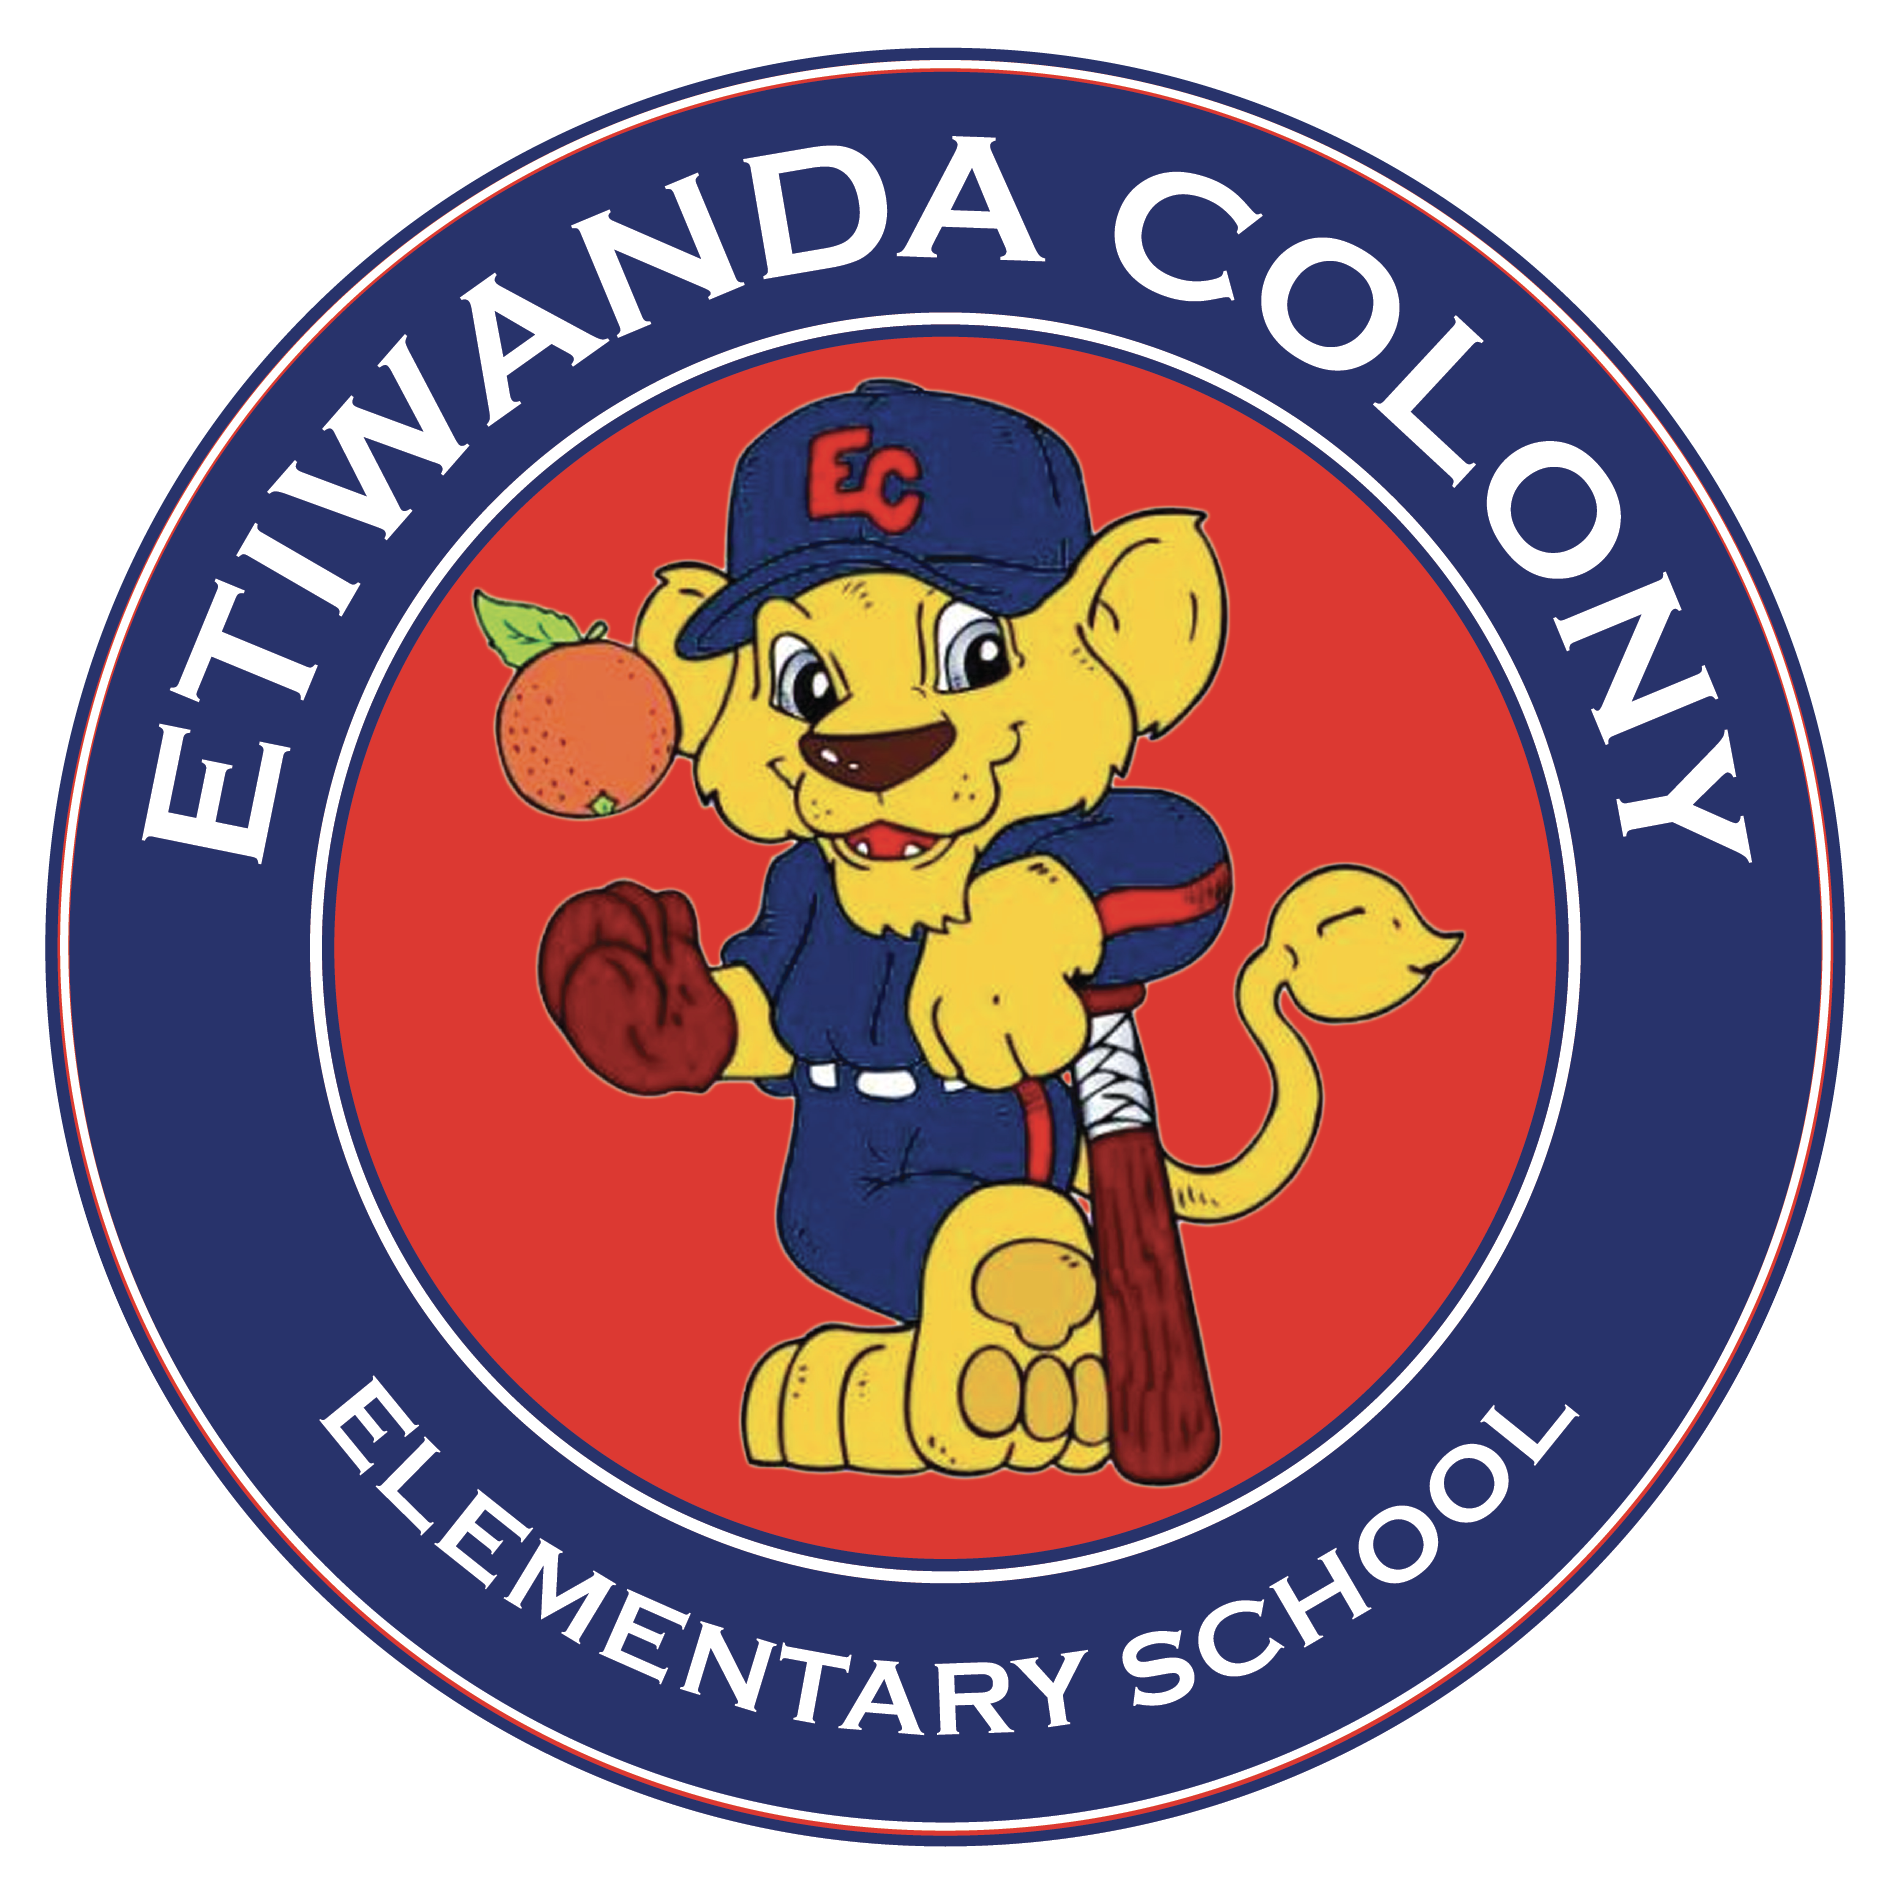 Colony Logo